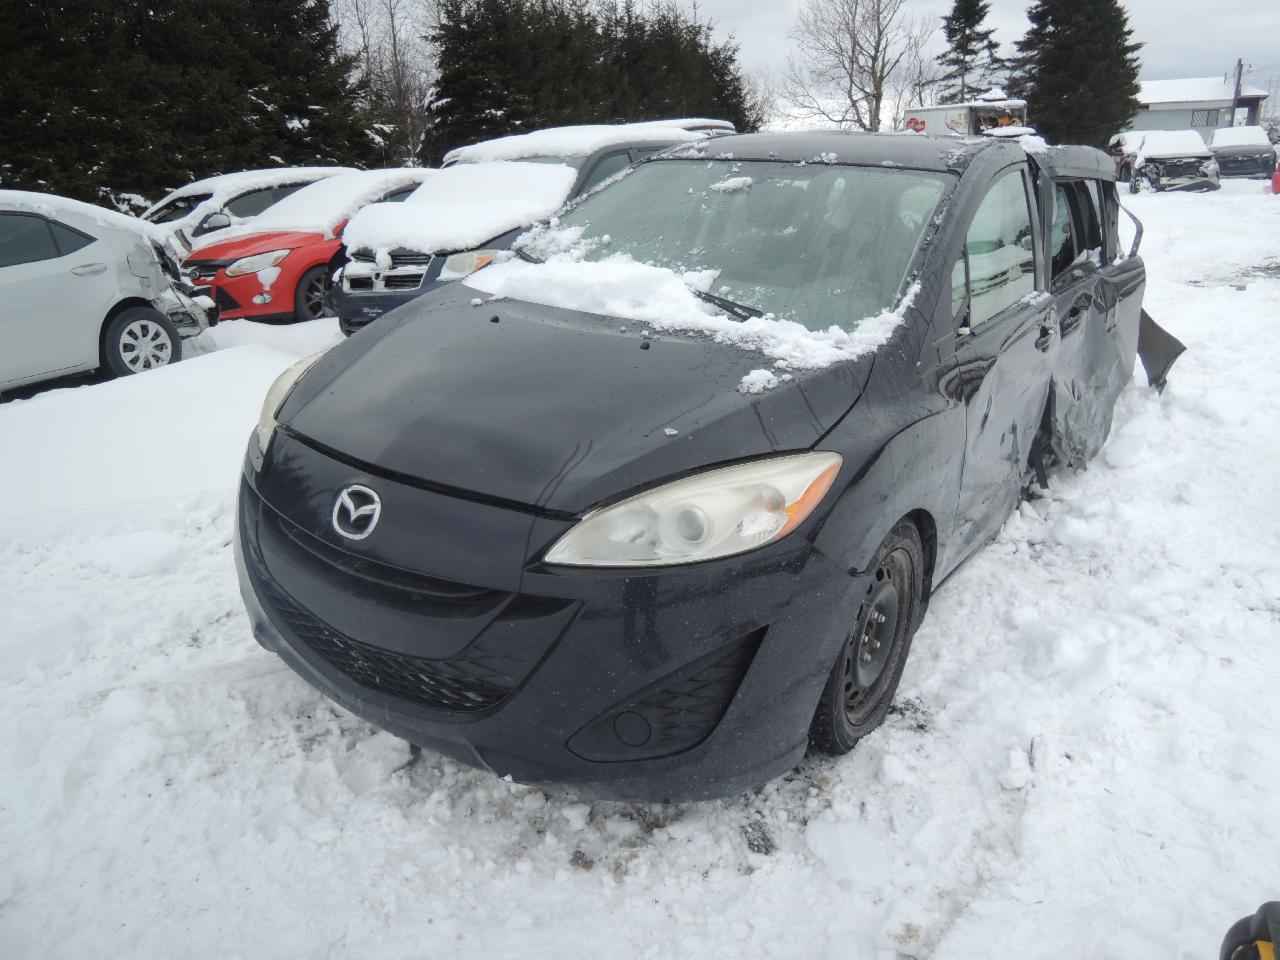 2012 Mazda Mazda5